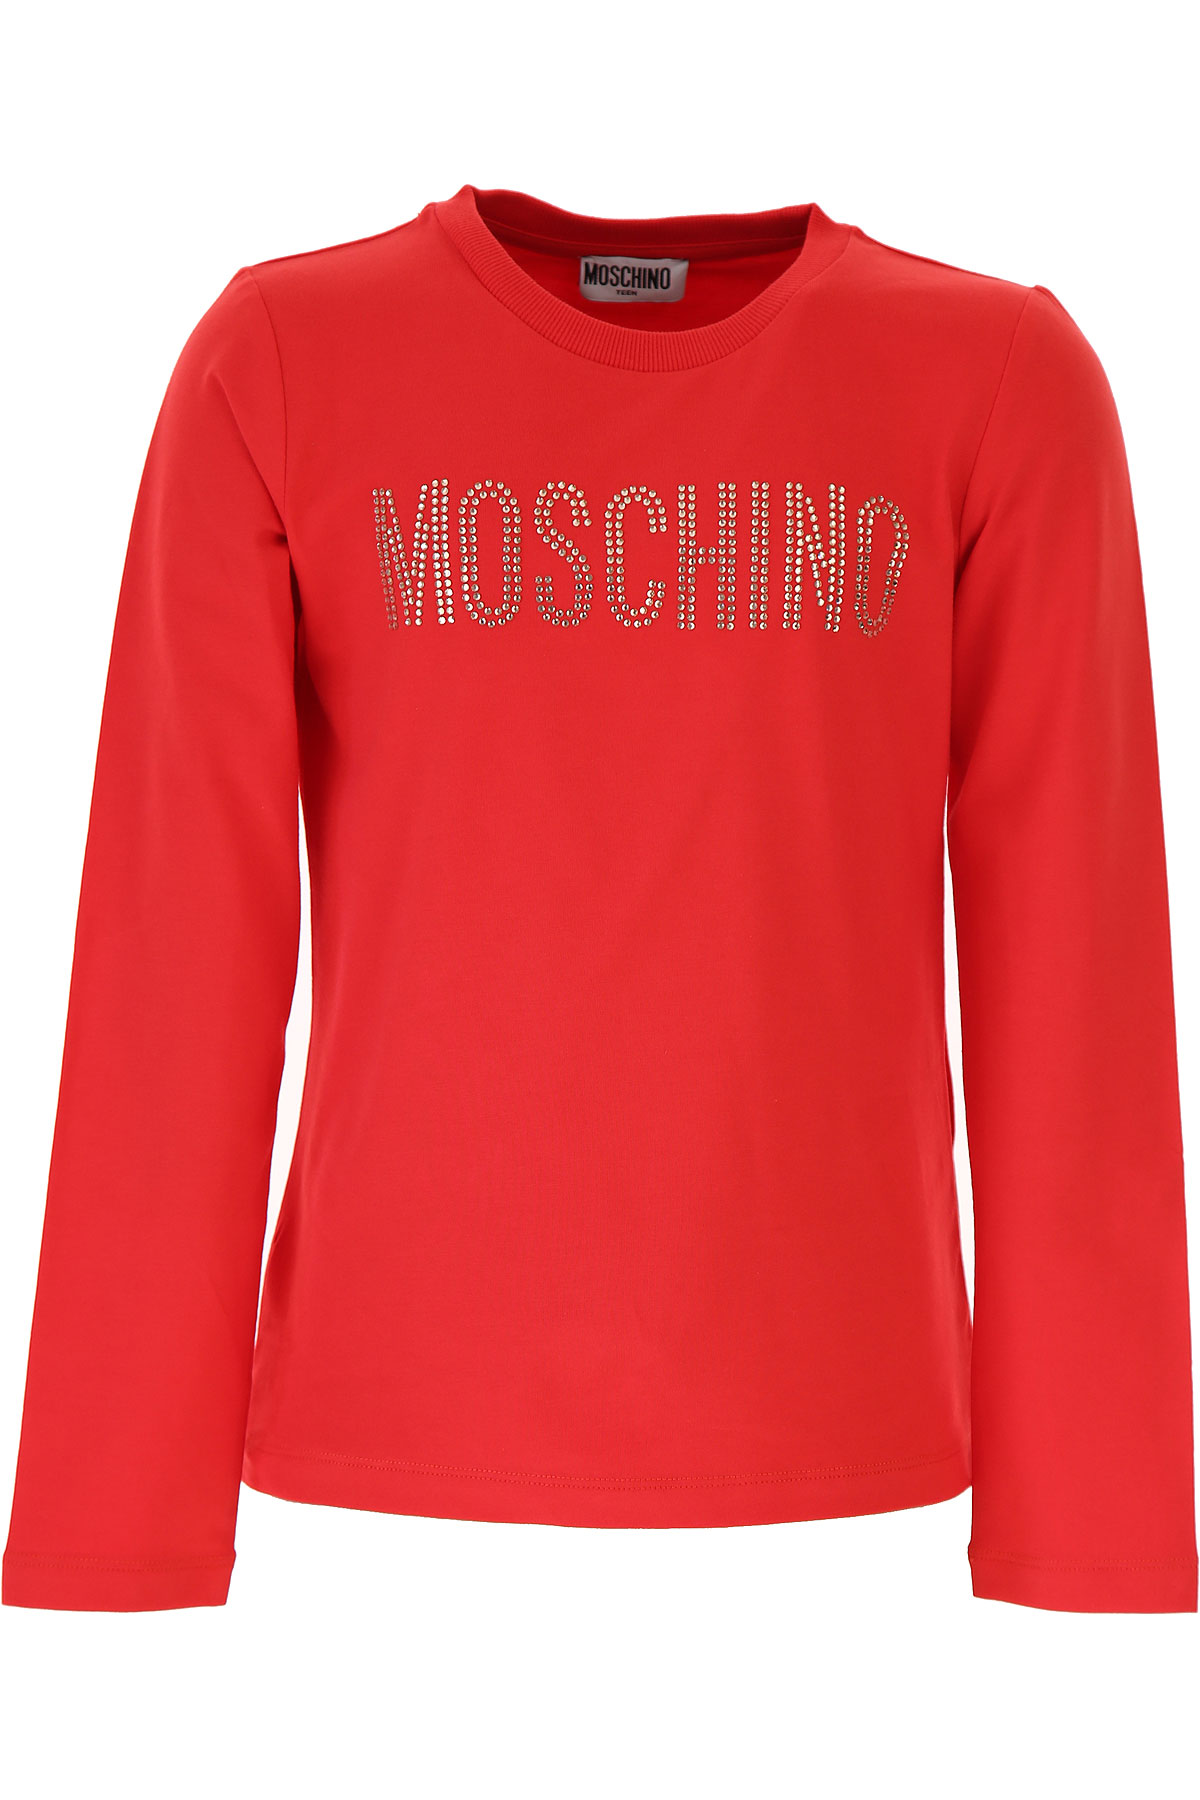 Moschino Kinder T-Shirt für Mädchen Günstig im Sale, Rot, Baumwolle, 2017, 10Y 12Y 14Y 4Y 5Y 8Y